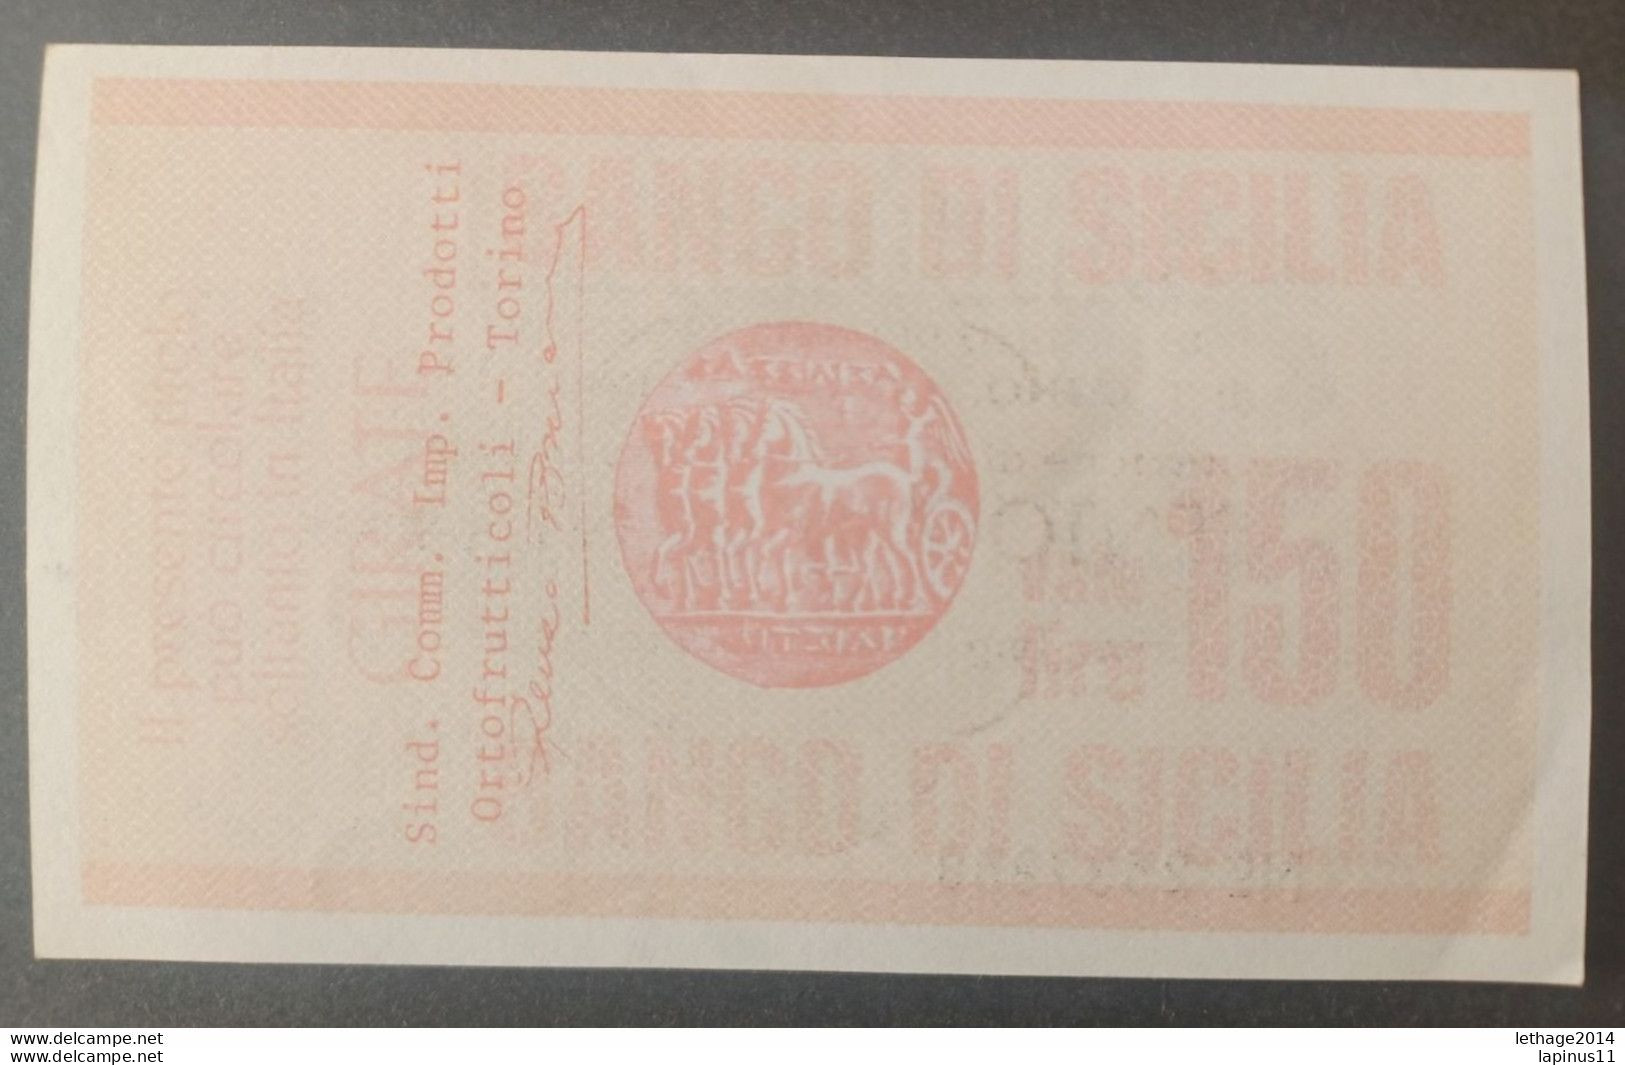 BANKNOTE ITALY MINICHECKS 150 LIRE BANCO DI SICILIA 1977 FDS - [10] Checks And Mini-checks